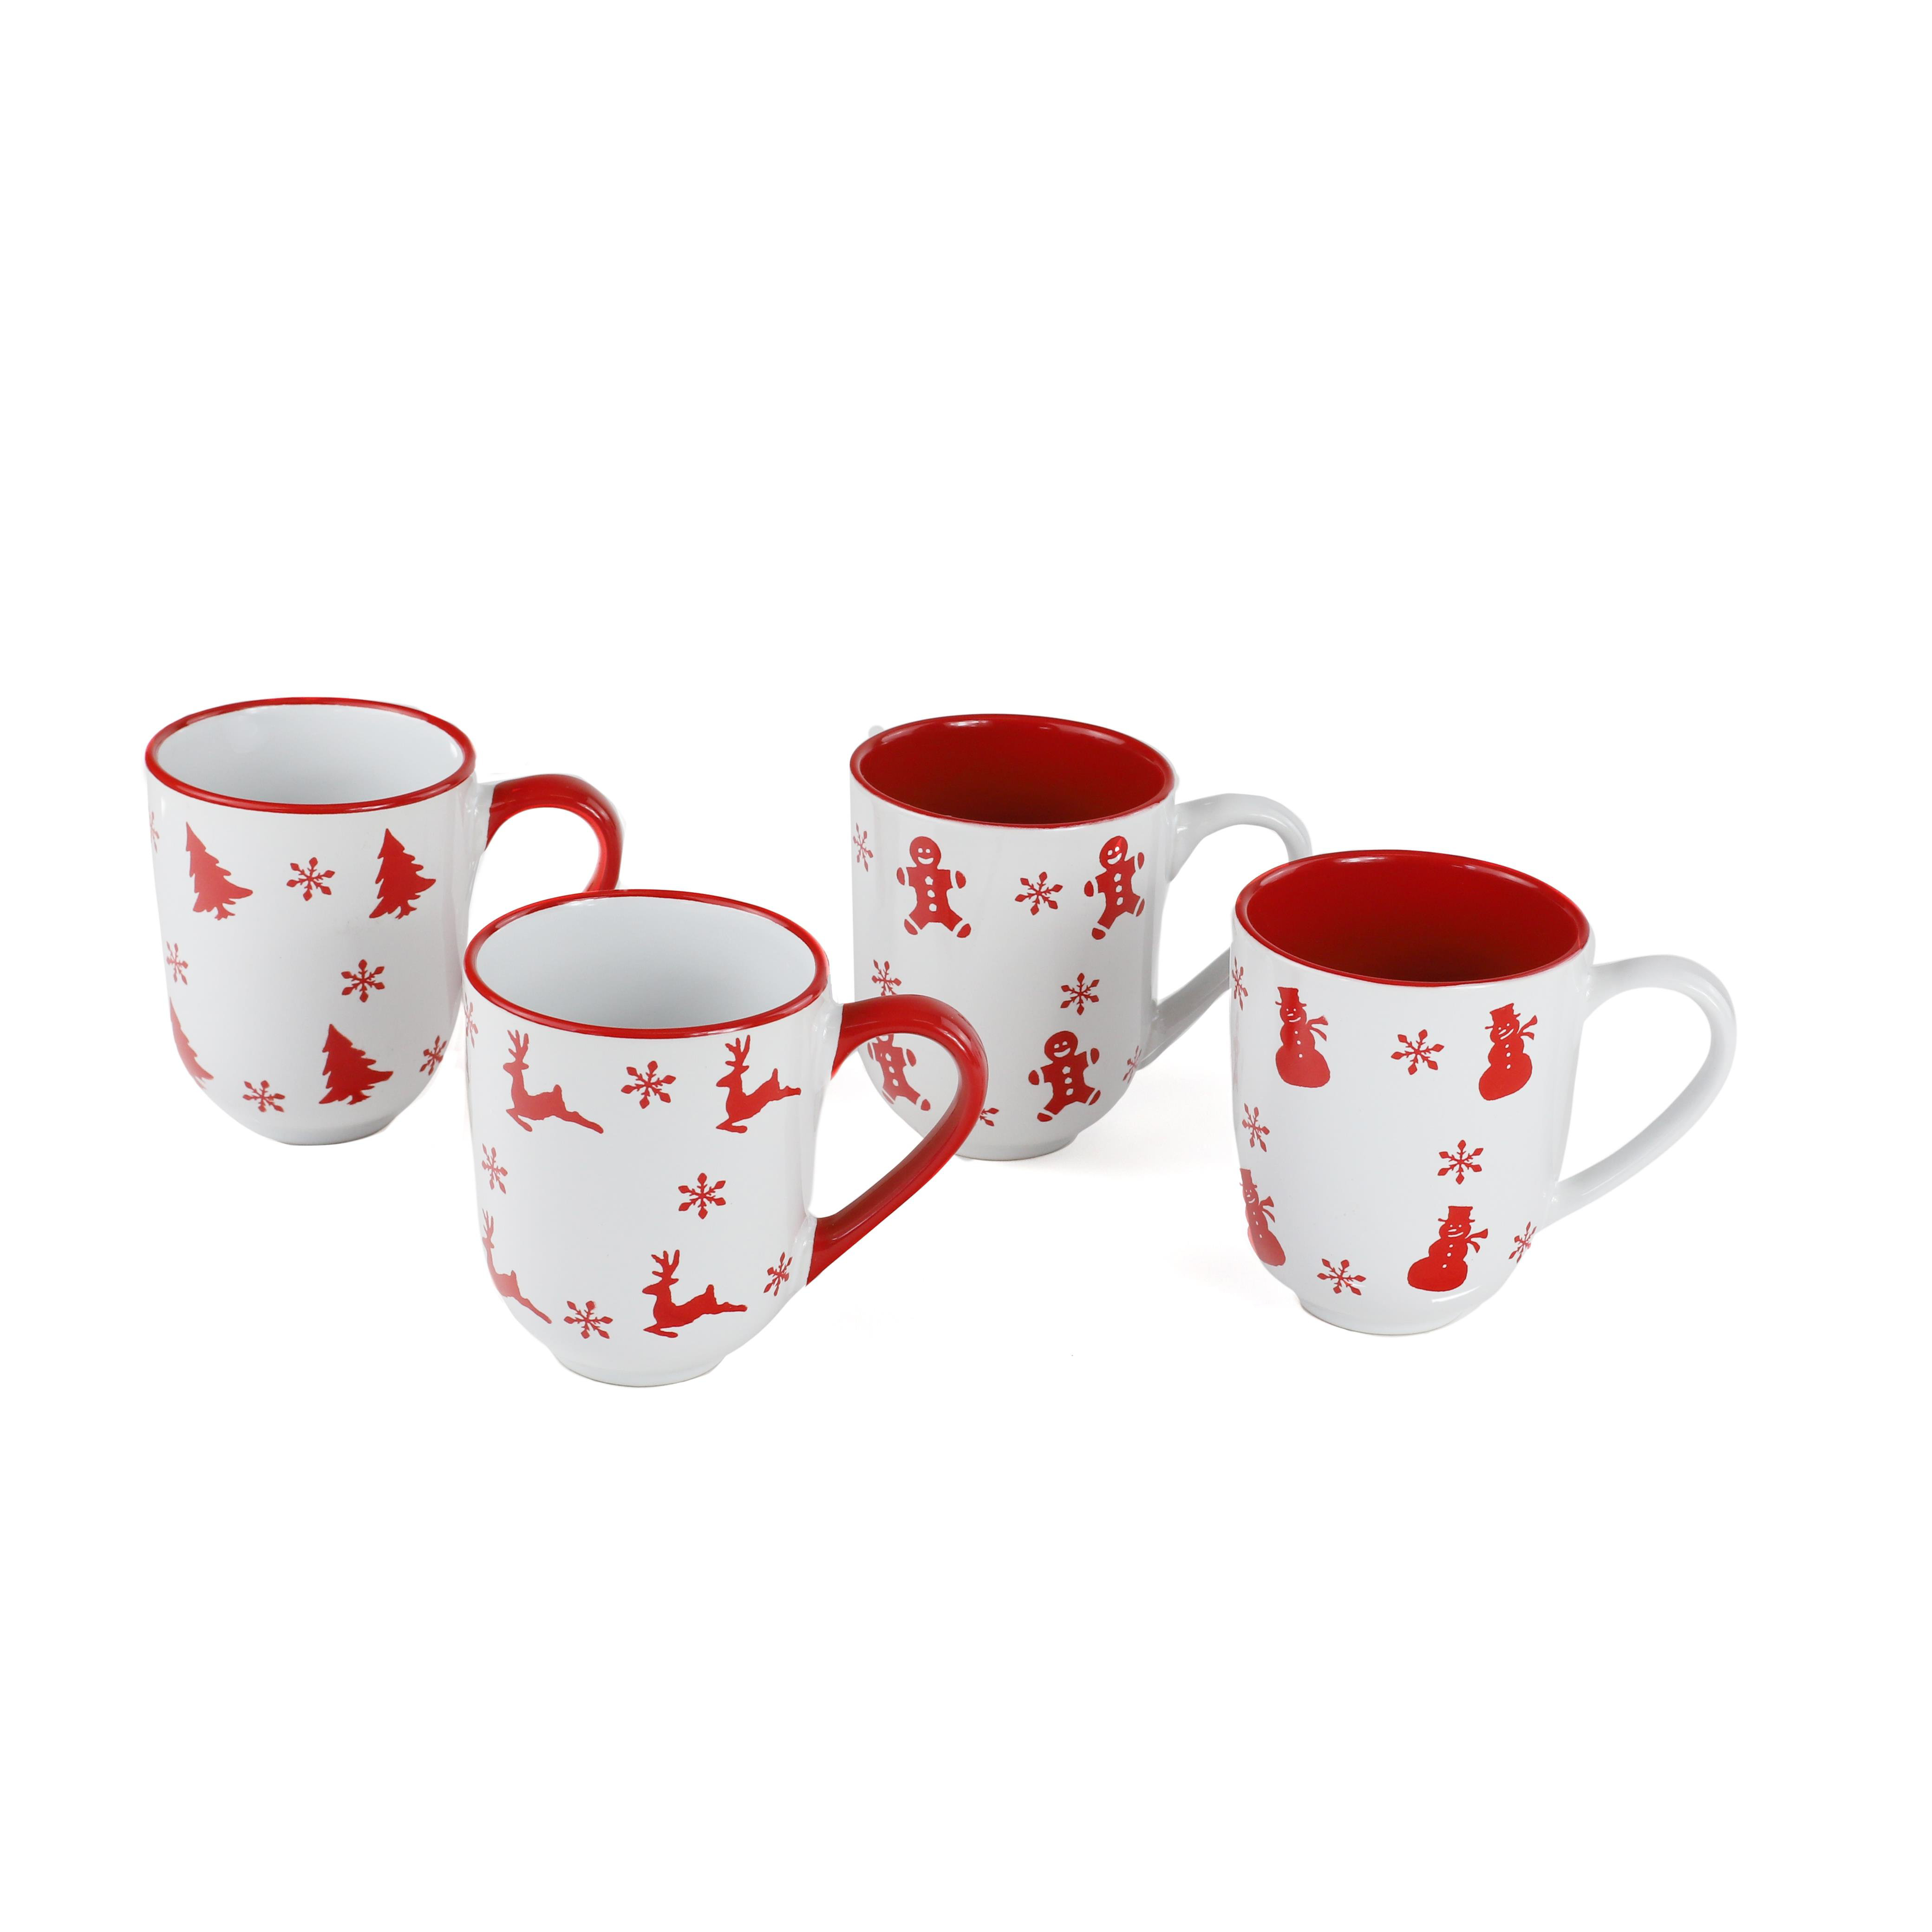 https://assets.wfcdn.com/im/19310188/compr-r85/2175/217595294/winterfest-12oz-mugs-set-of-4-assorted-winter-designs.jpg